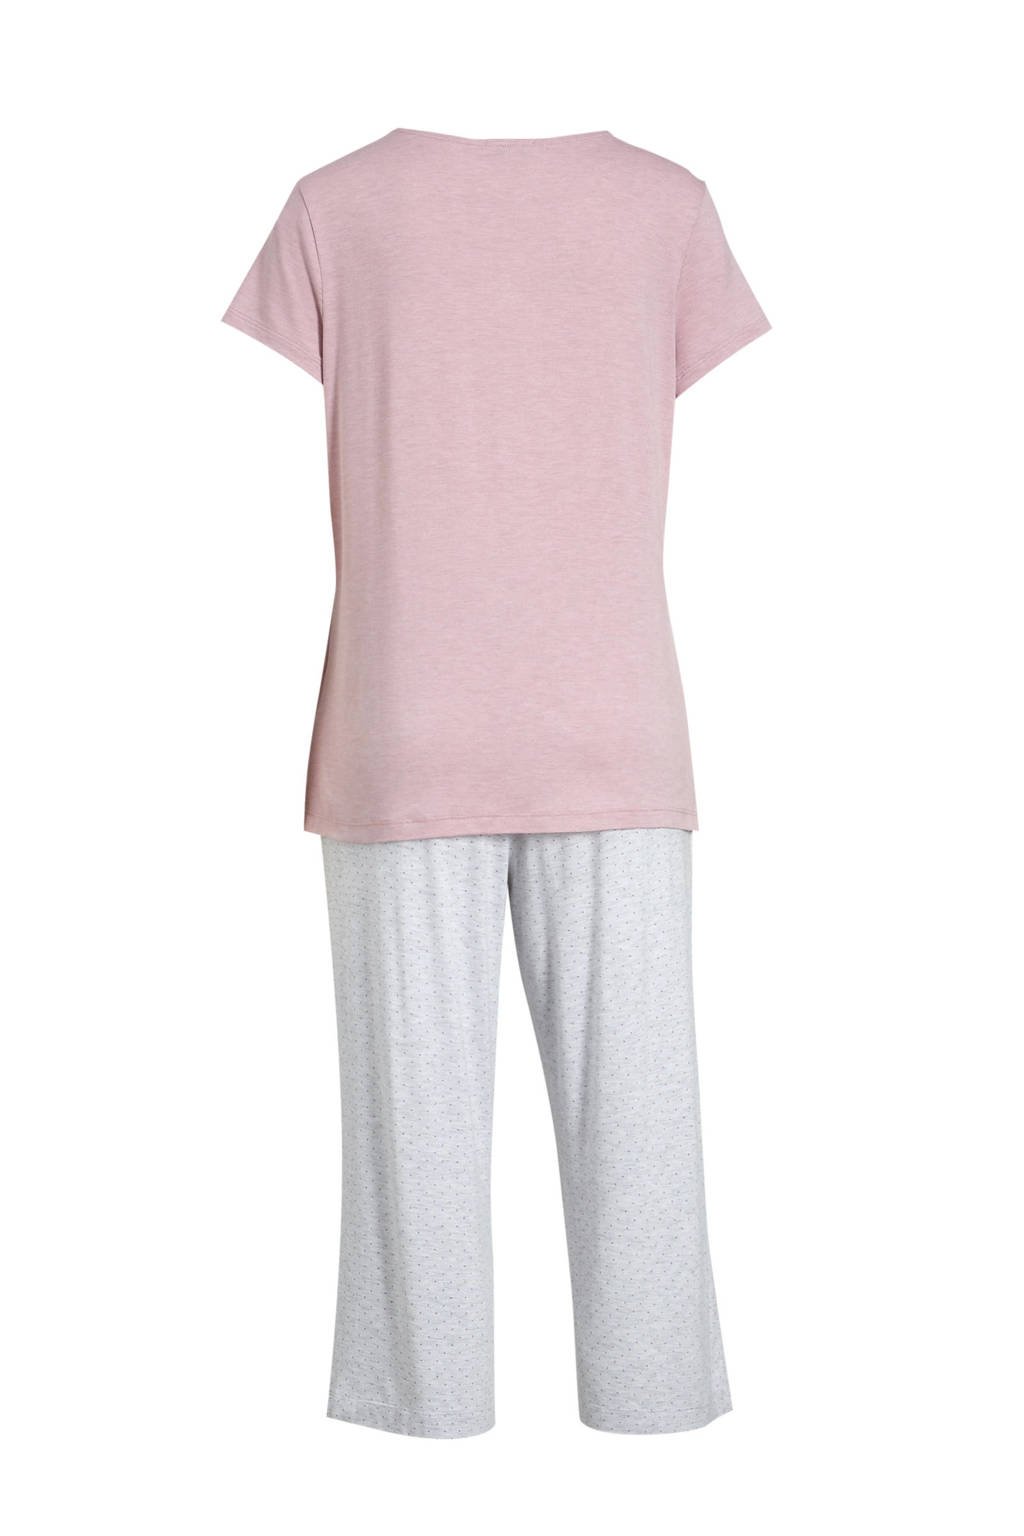 sticker schaduw Geavanceerde C&A pyjama roze/grijs | wehkamp